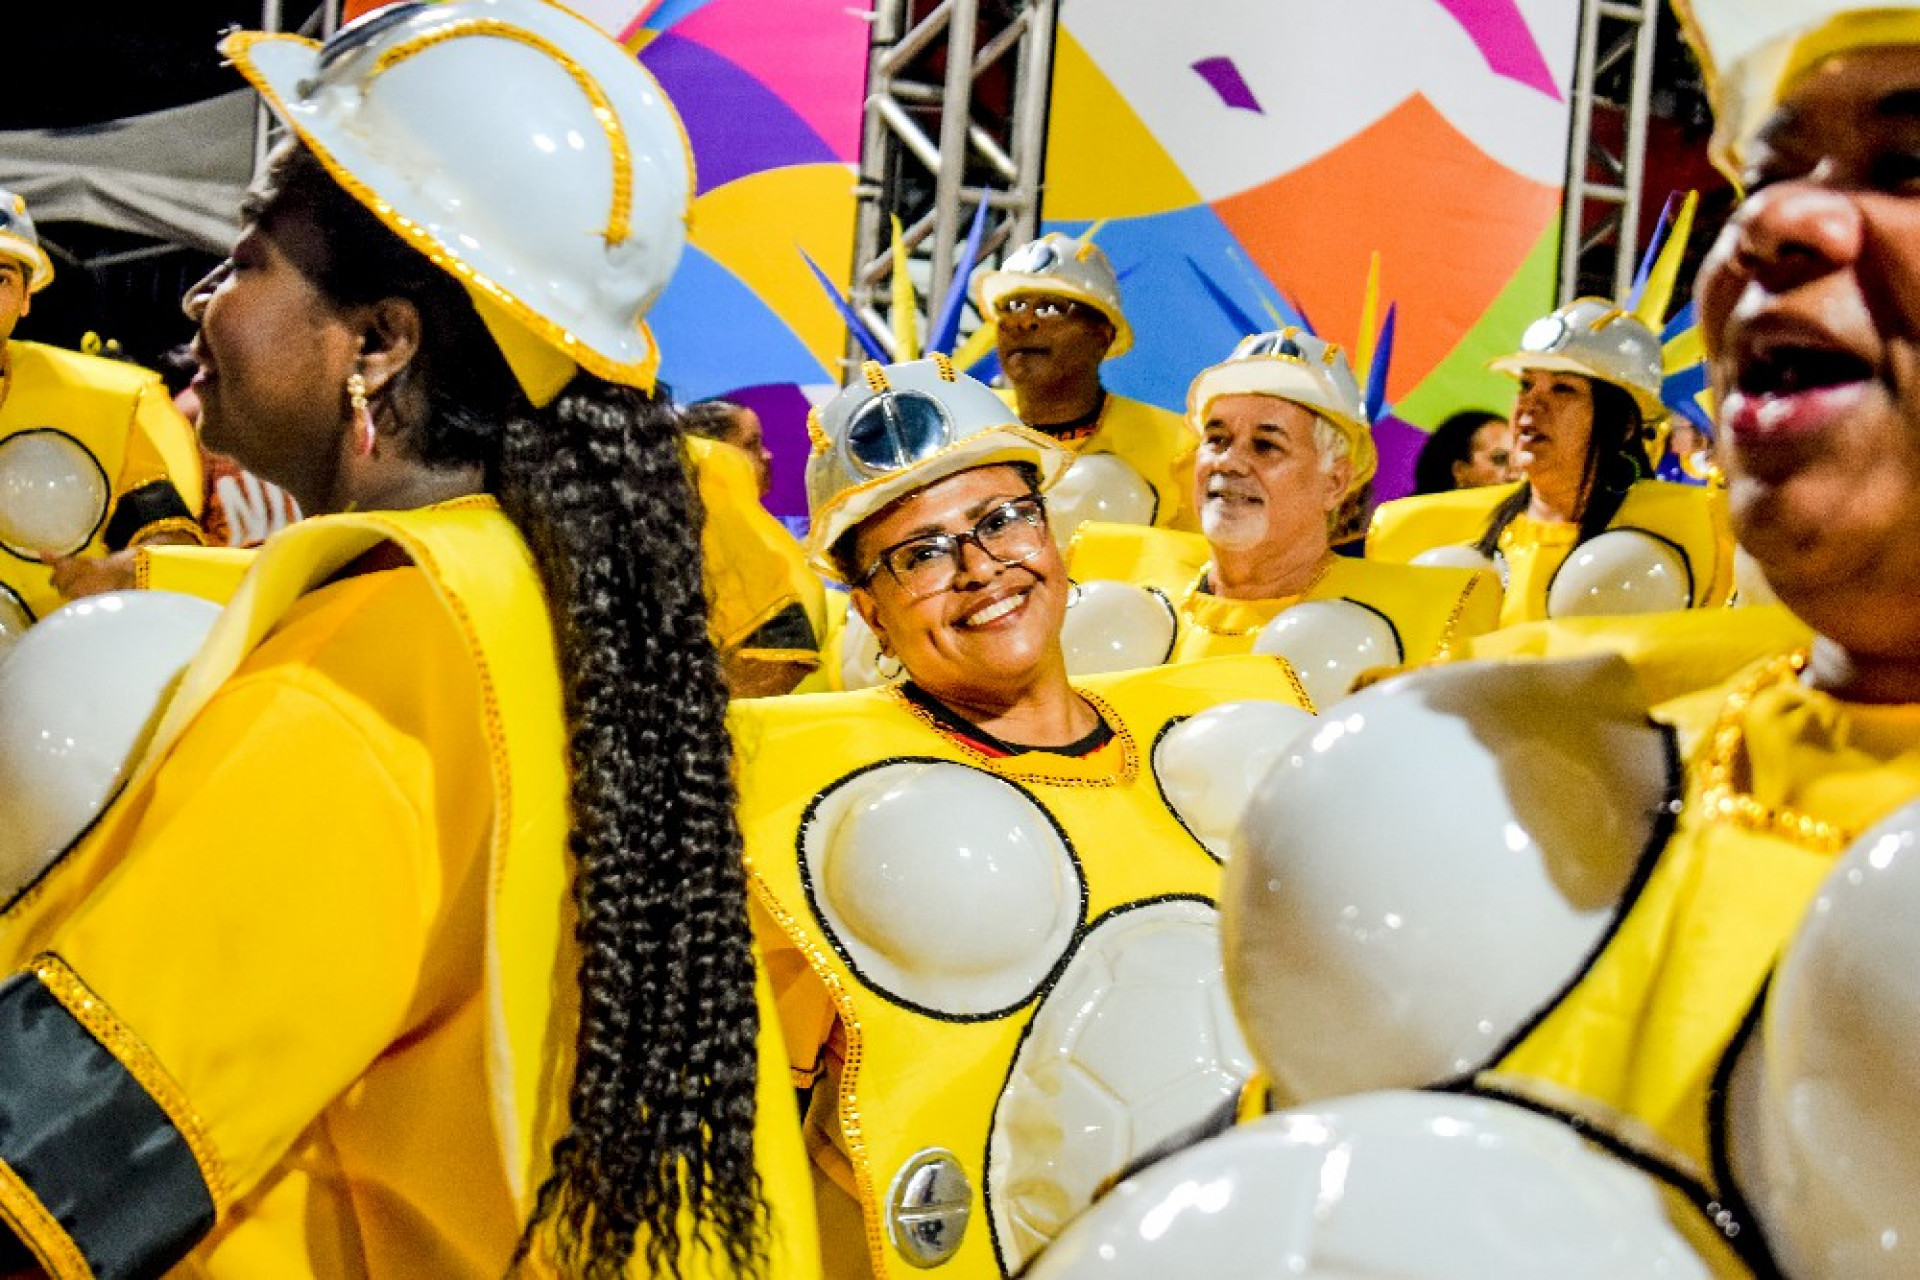 Primeira semana do carnaval da Nova Intendente contou com 37 escolas desfilando - Anderson Manhães/Superliga 